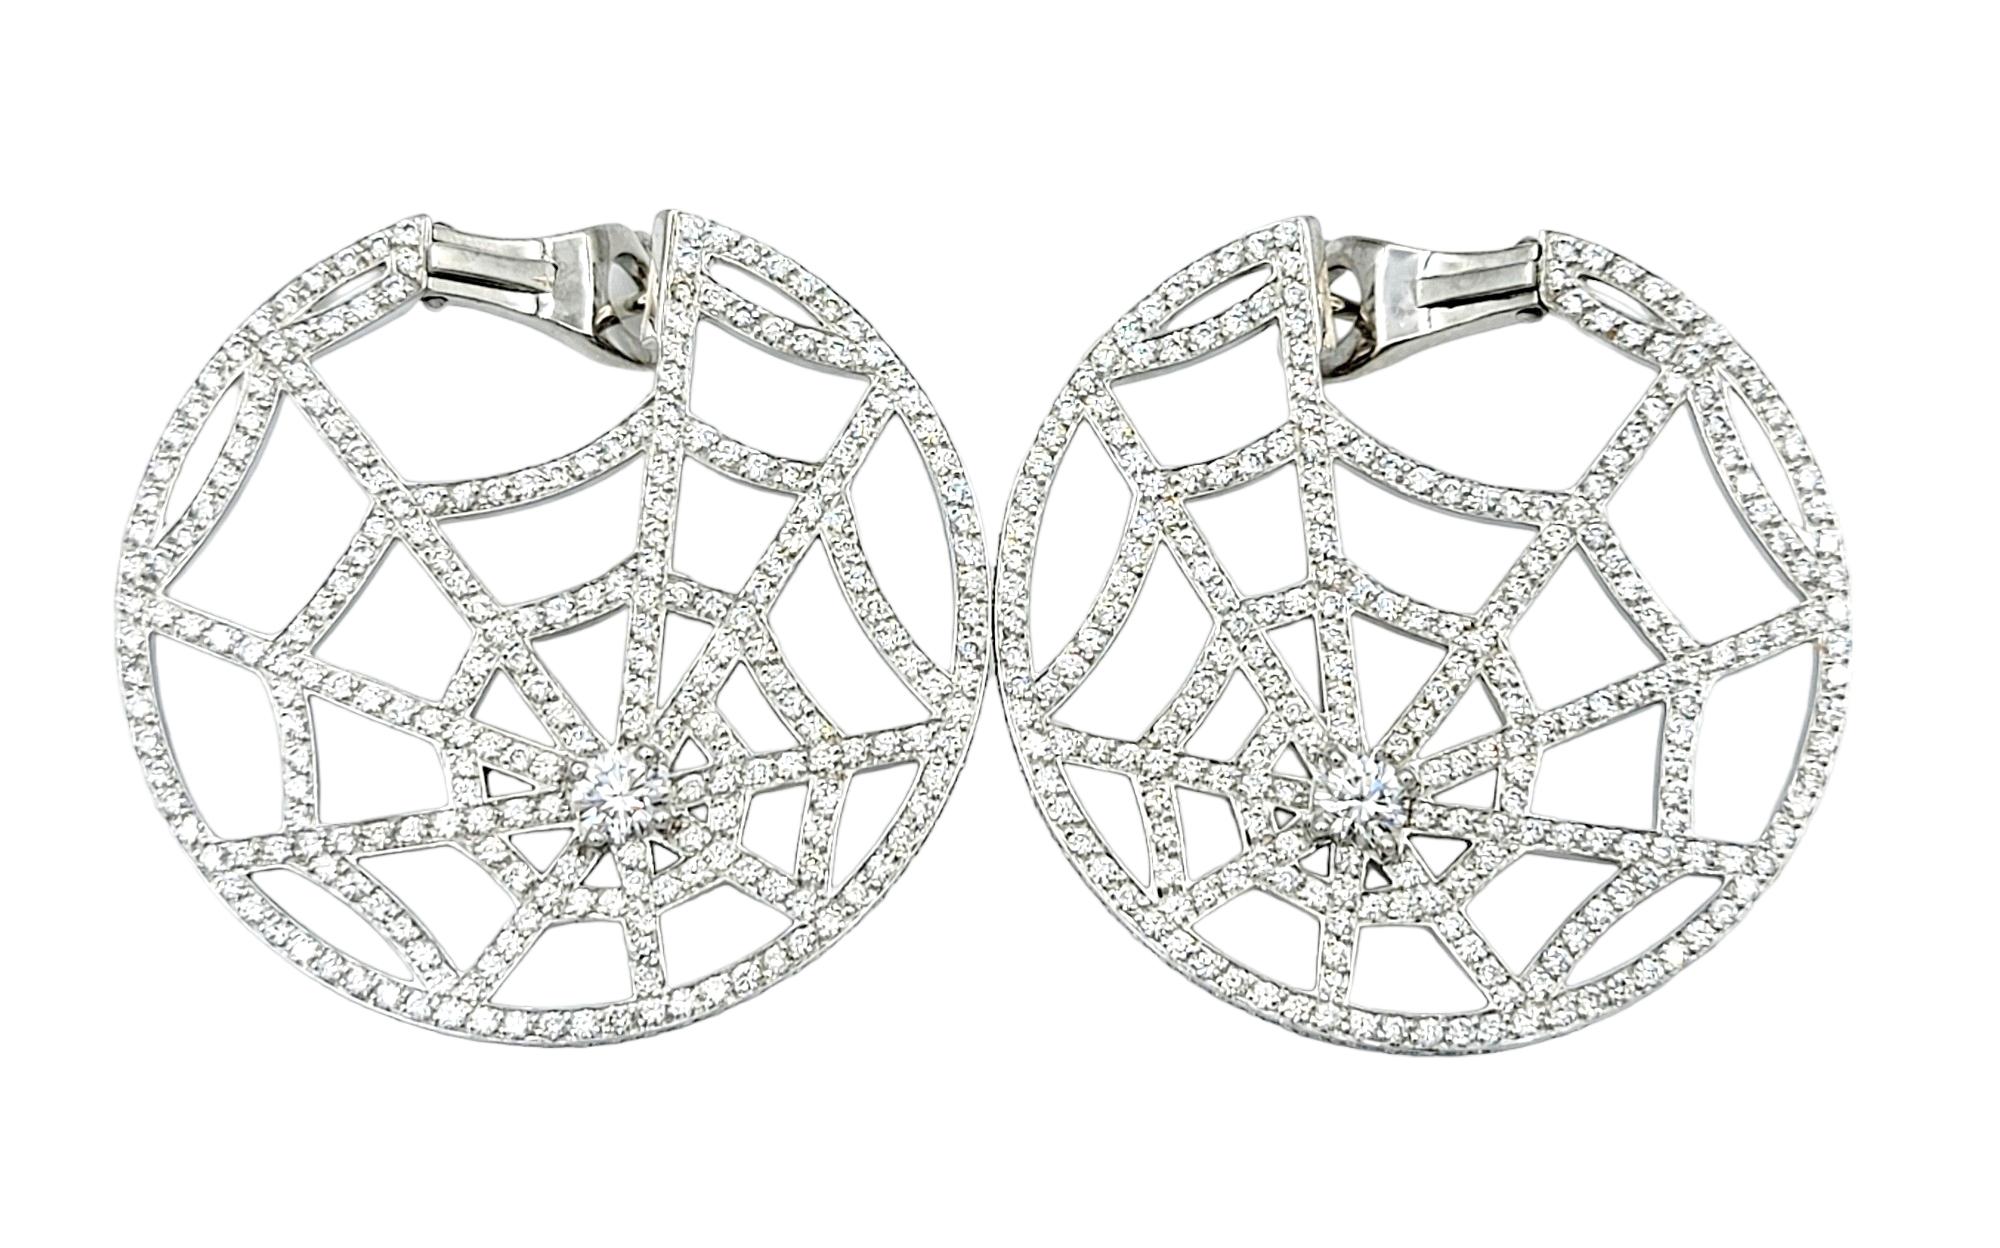 Ces boucles d'oreilles toile d'araignée en diamant de Chaumet, captivantes et uniques, sont une paire vraiment éblouissante qui incarne la sophistication et l'art. Réalisées avec une attention méticuleuse aux détails, ces fabuleuses boucles